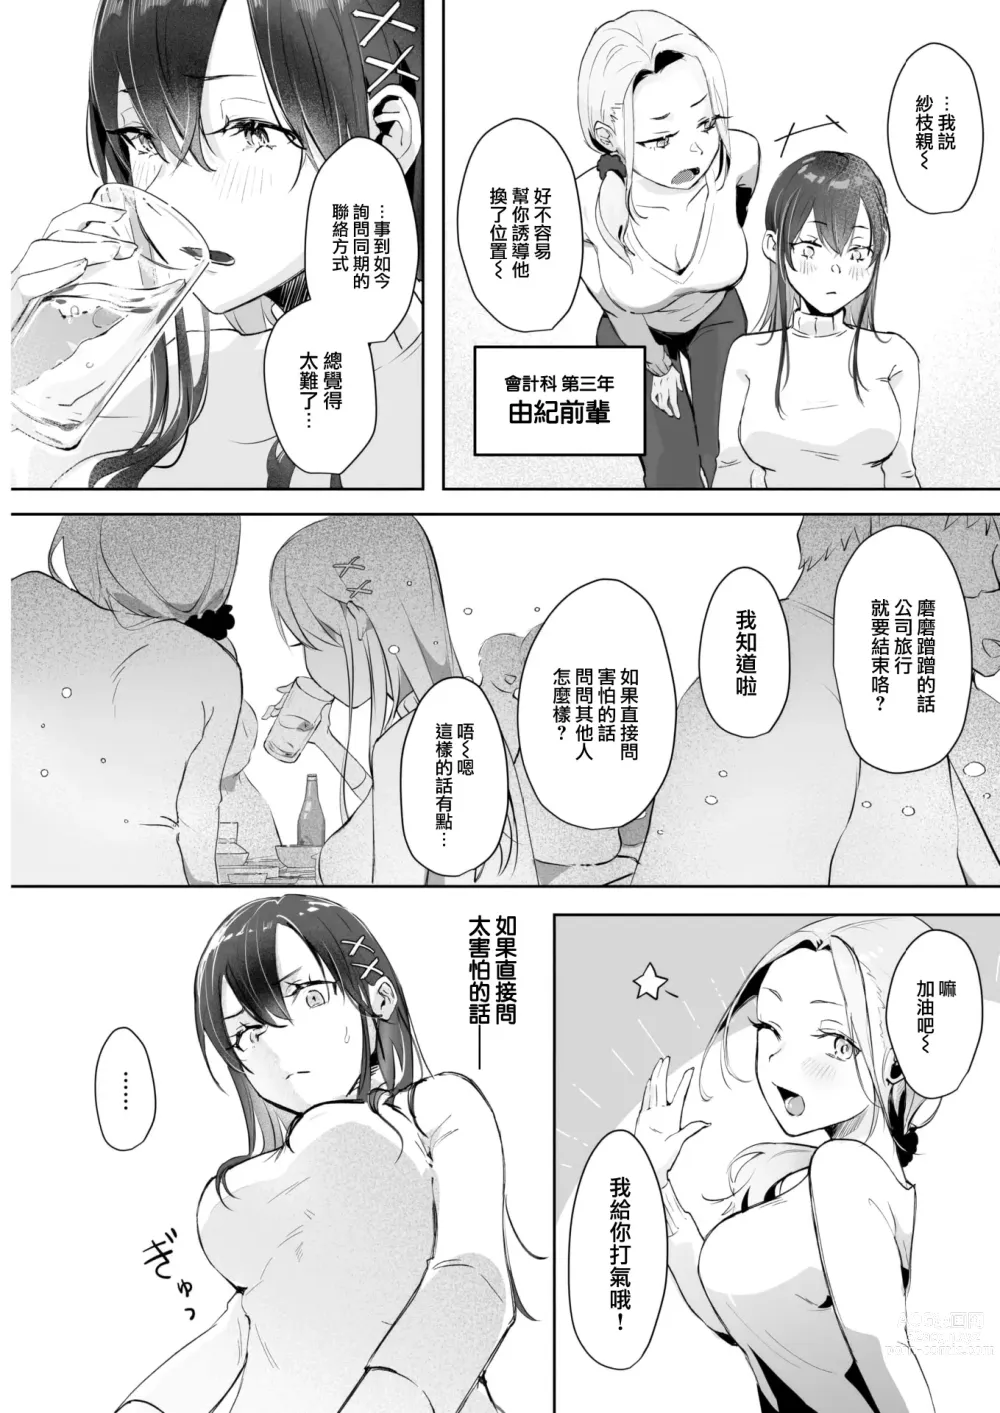 Page 4 of manga Koibumi Confusion